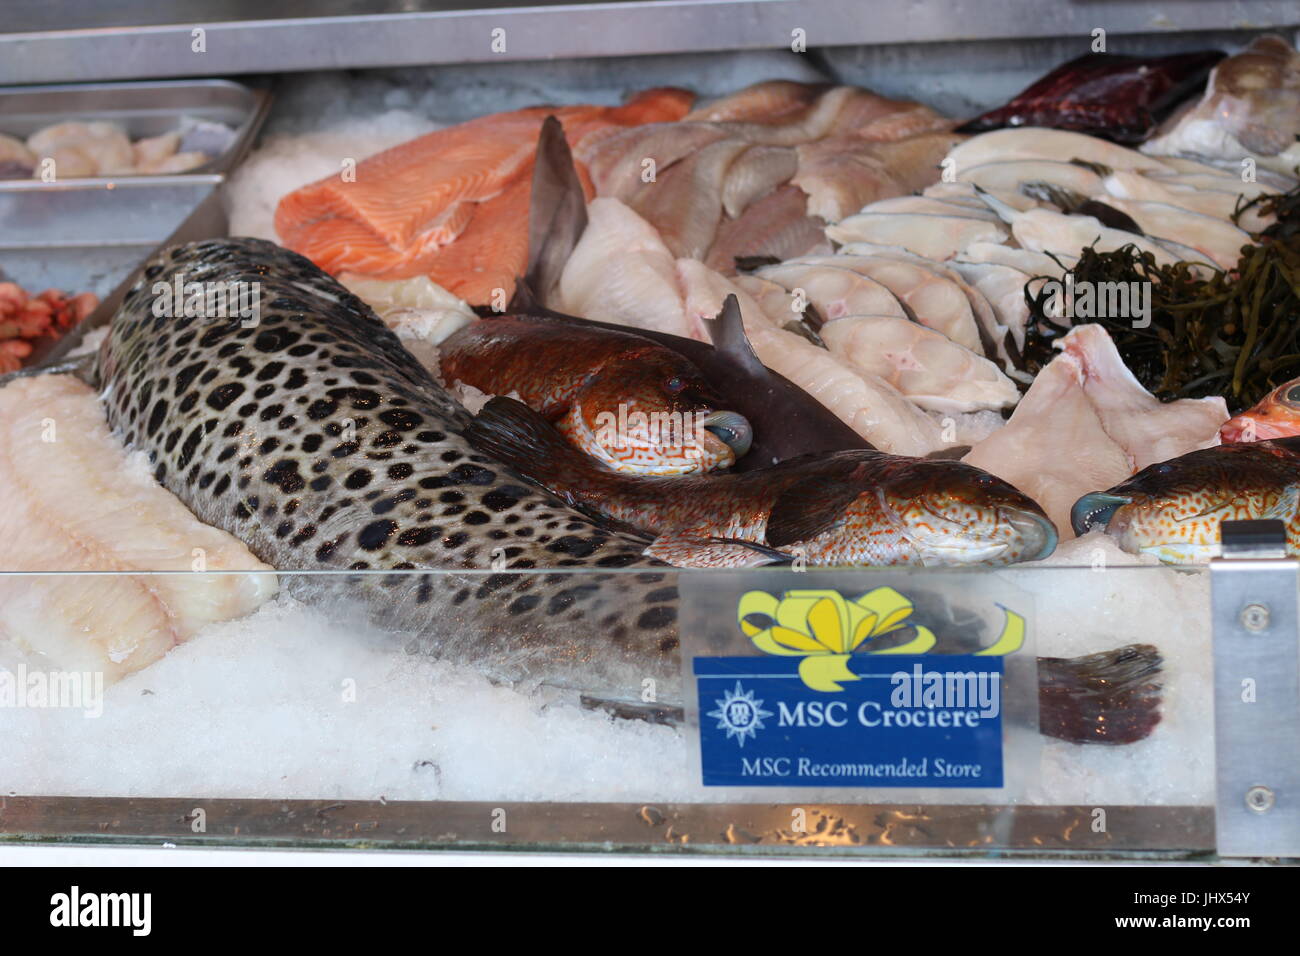 Un alléchant éventail de poissons frais sur une échoppe de marché Banque D'Images